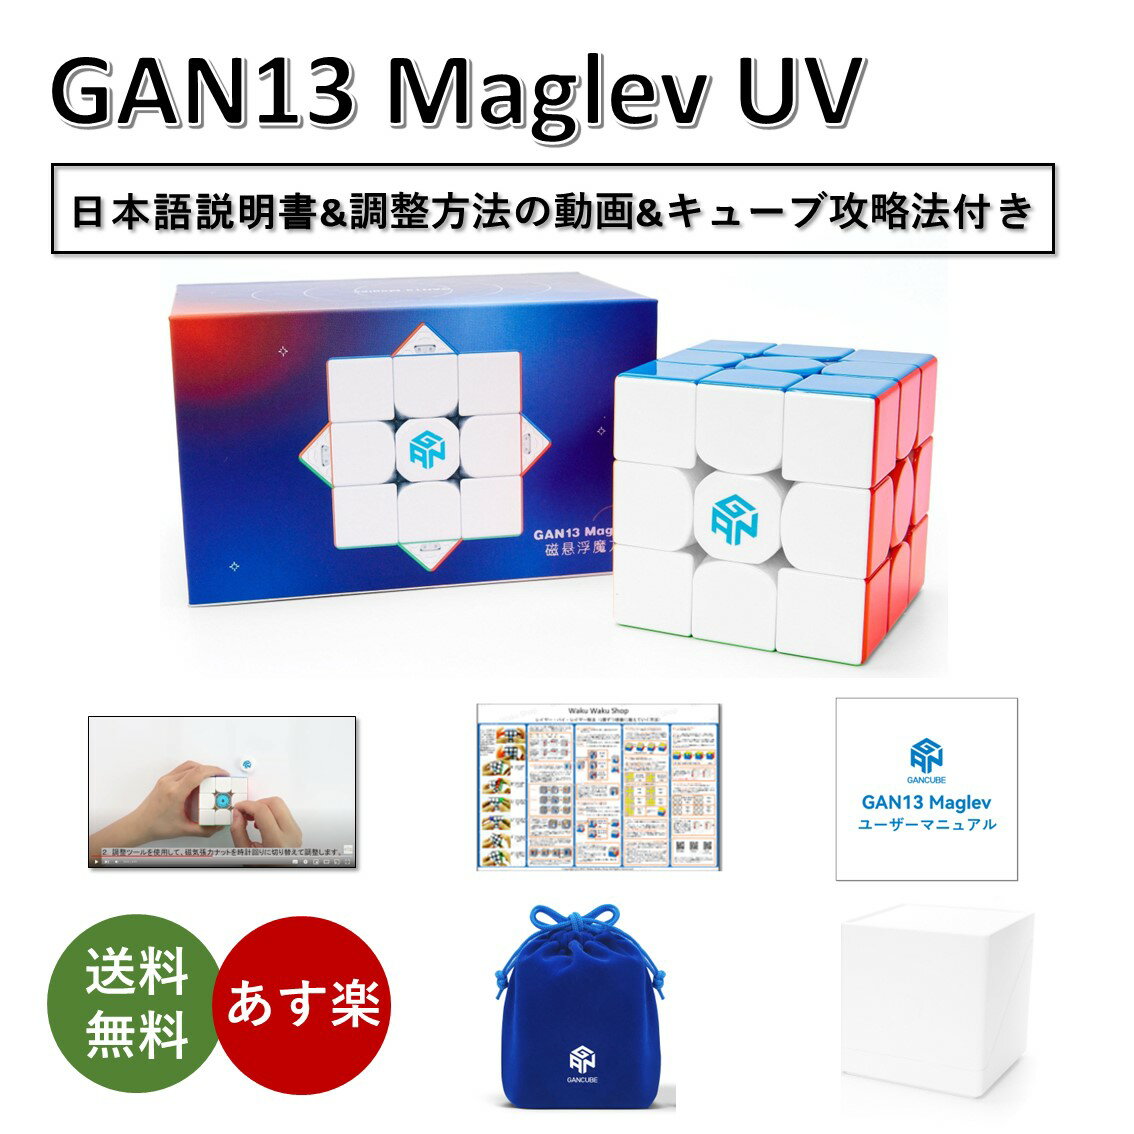 【日本語説明書付き】 【正規販売店】 【安心の保証付き】 GAN 13 Maglev UV マグレブ 磁石内蔵 3x3x3キューブ ステ…